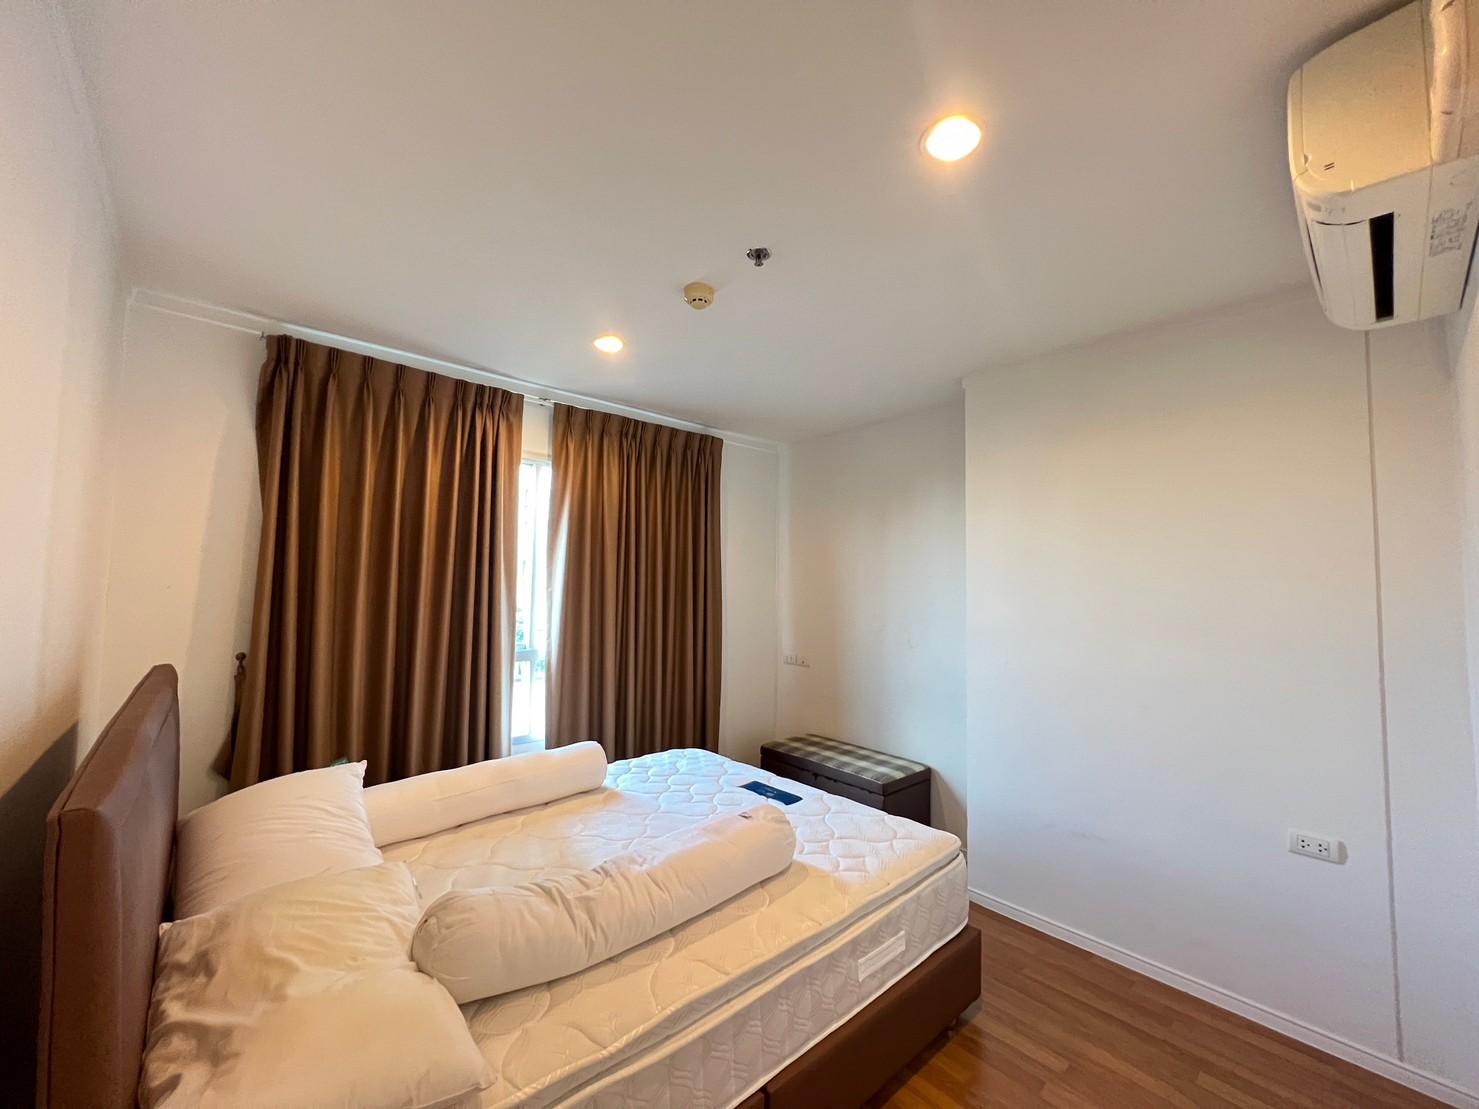 เช่าคอนโด ลุมพินี เพลส สุขสวัสดิ์ - พระราม2 คอนโดมิเนียม - Condo Rental Lumpini Place Suksawat - Rama2 condominium - 2645017